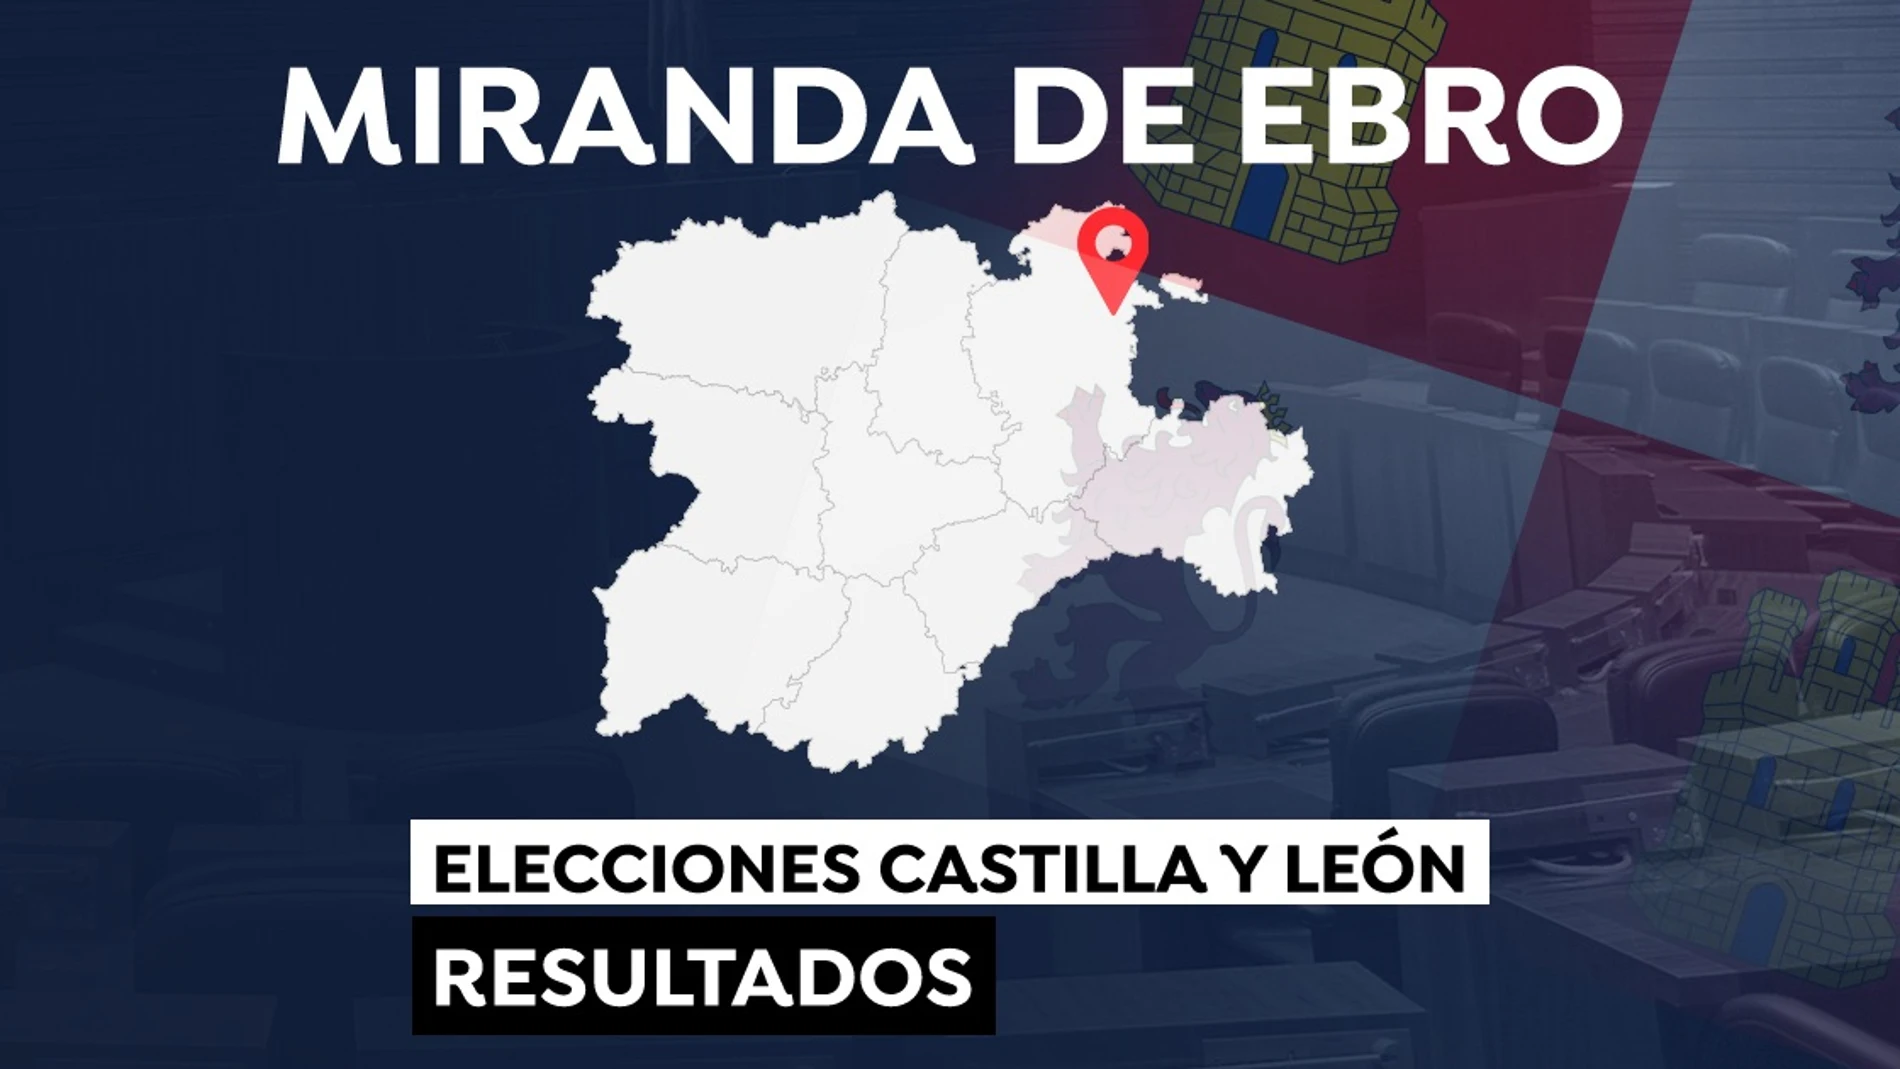 Elecciones a las Cortes de Castilla y León 2022: Resultado en Miranda de Ebro